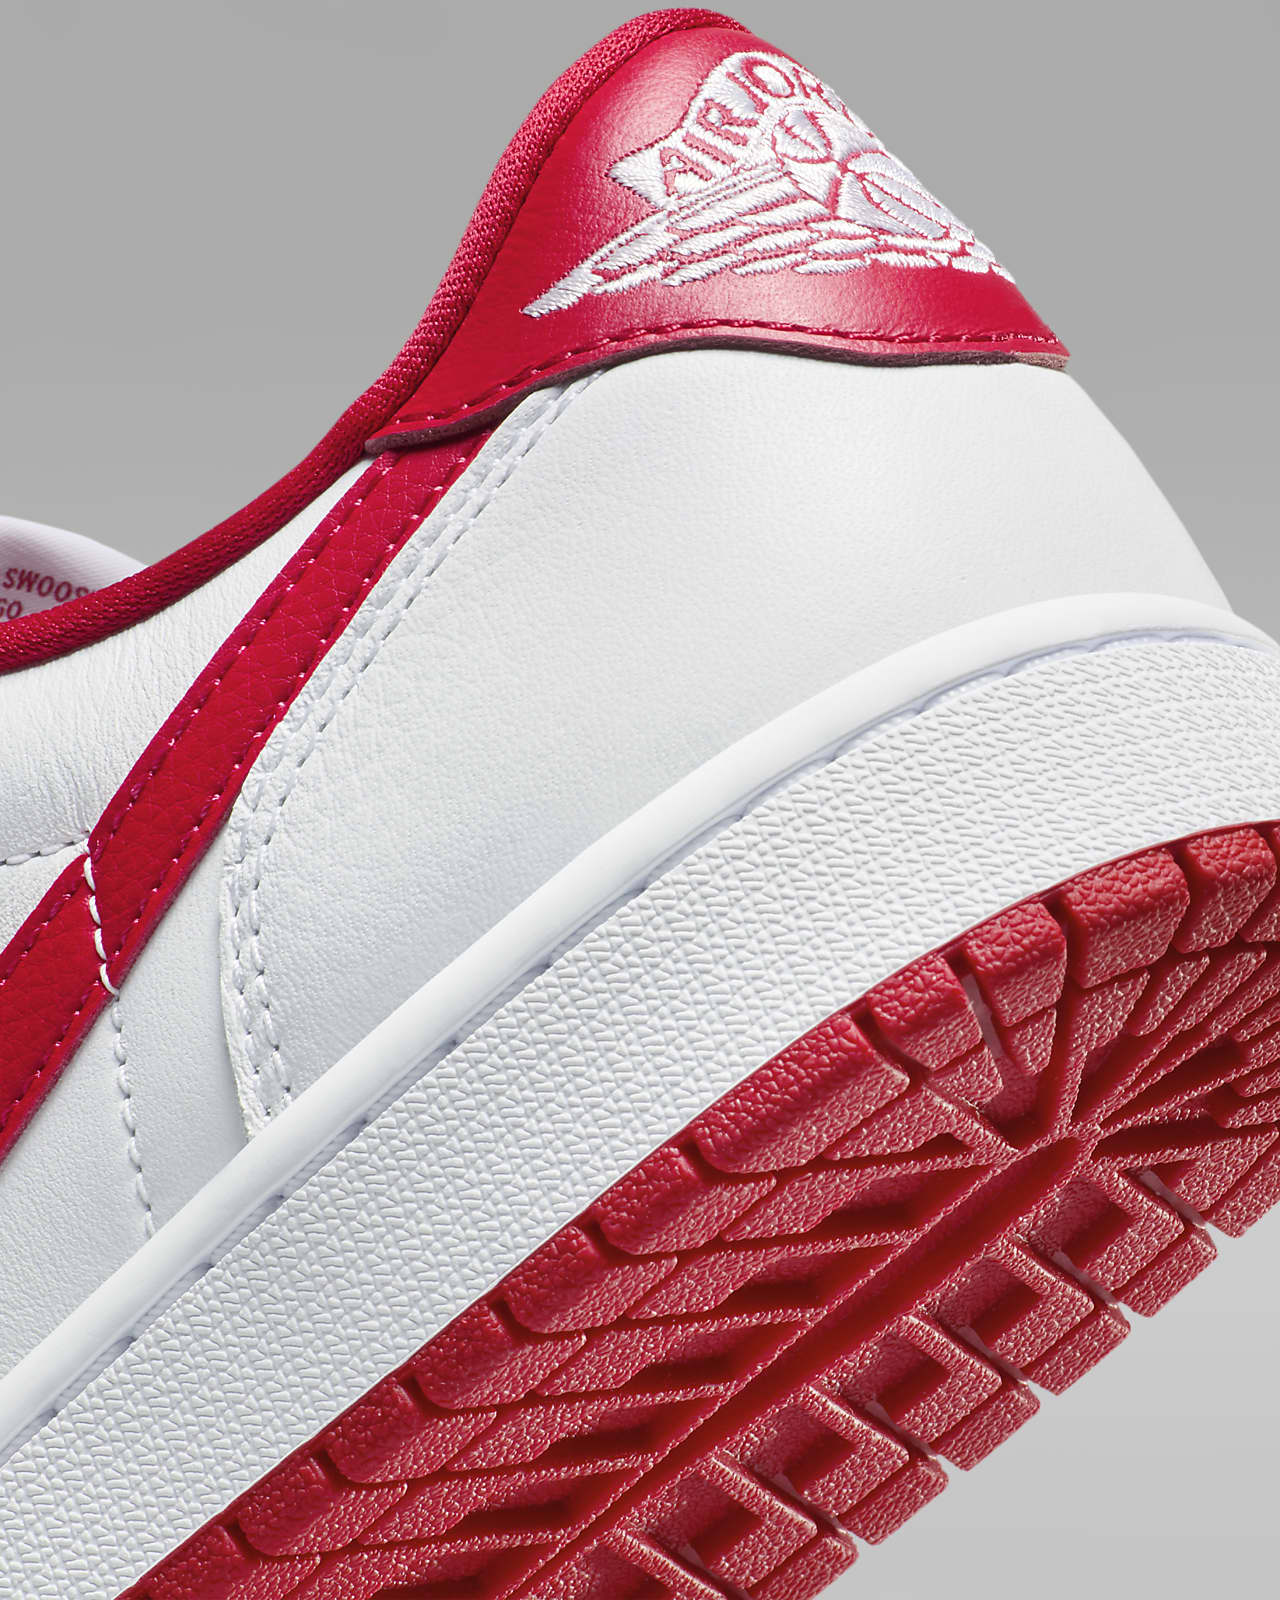 Buy Air Jordan 1 Retro (OG) White/Varsity Red-Black (12) at